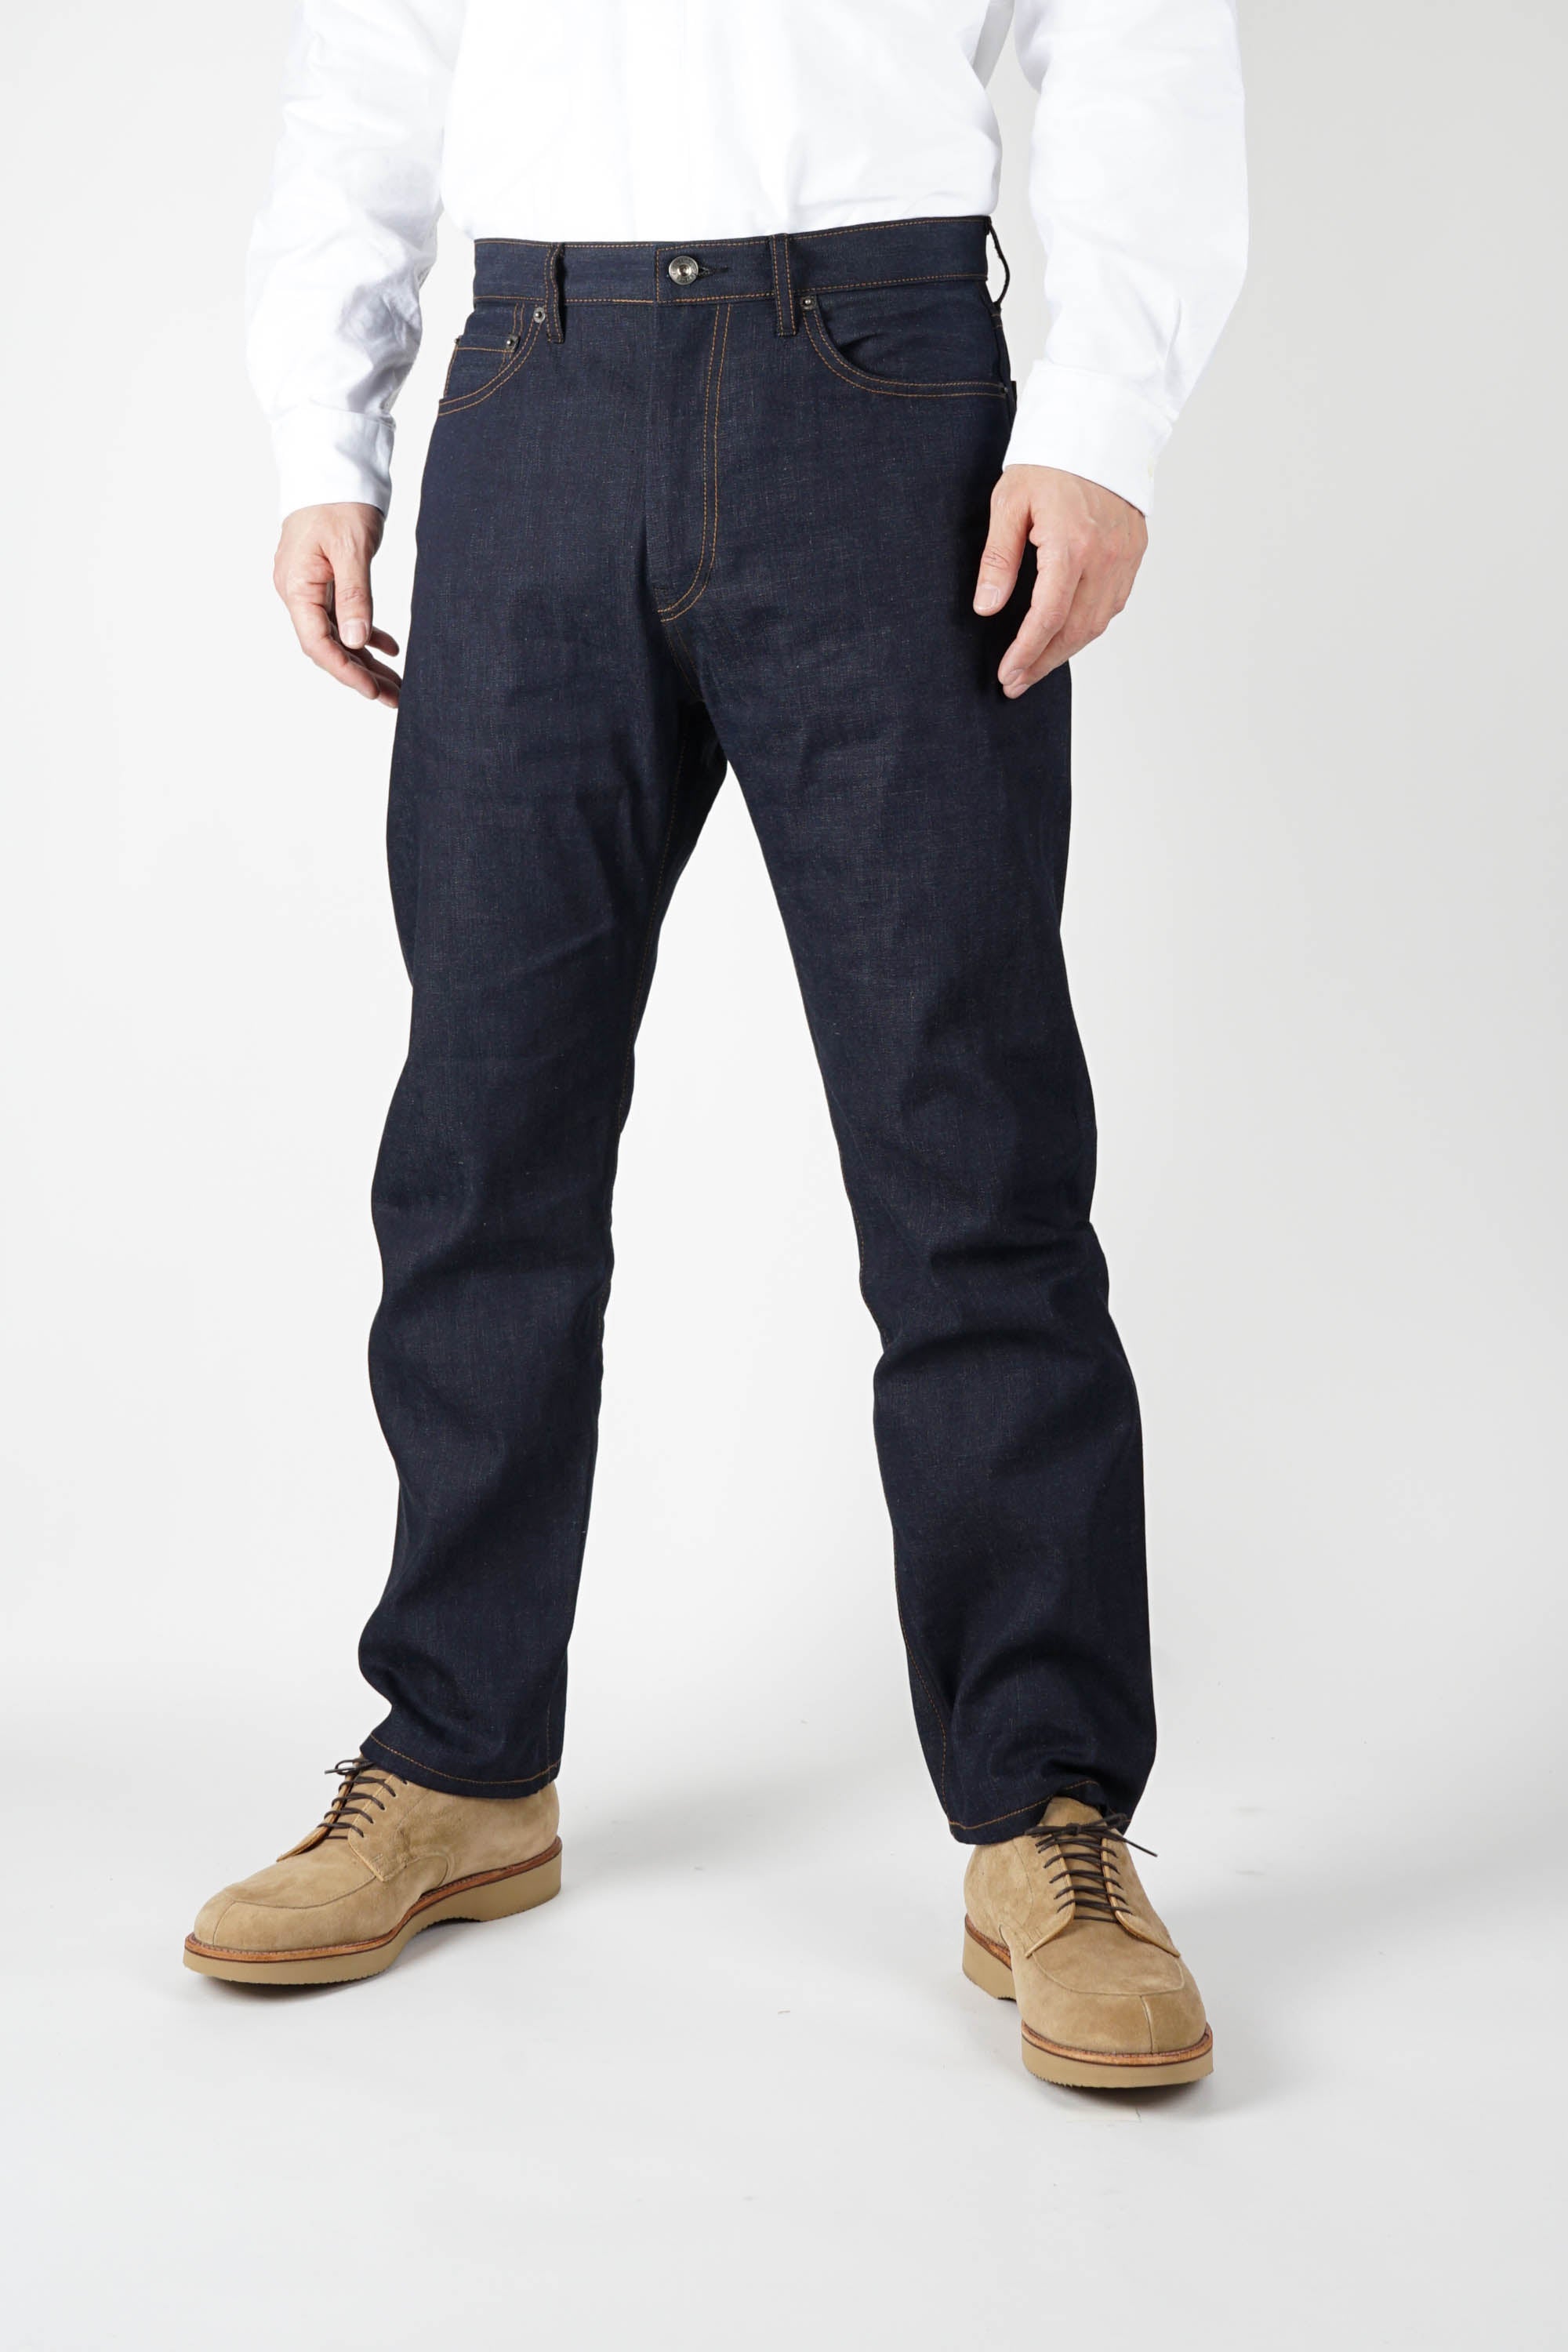 Type 5 Jeans - Indigo 10oz Cone Denim